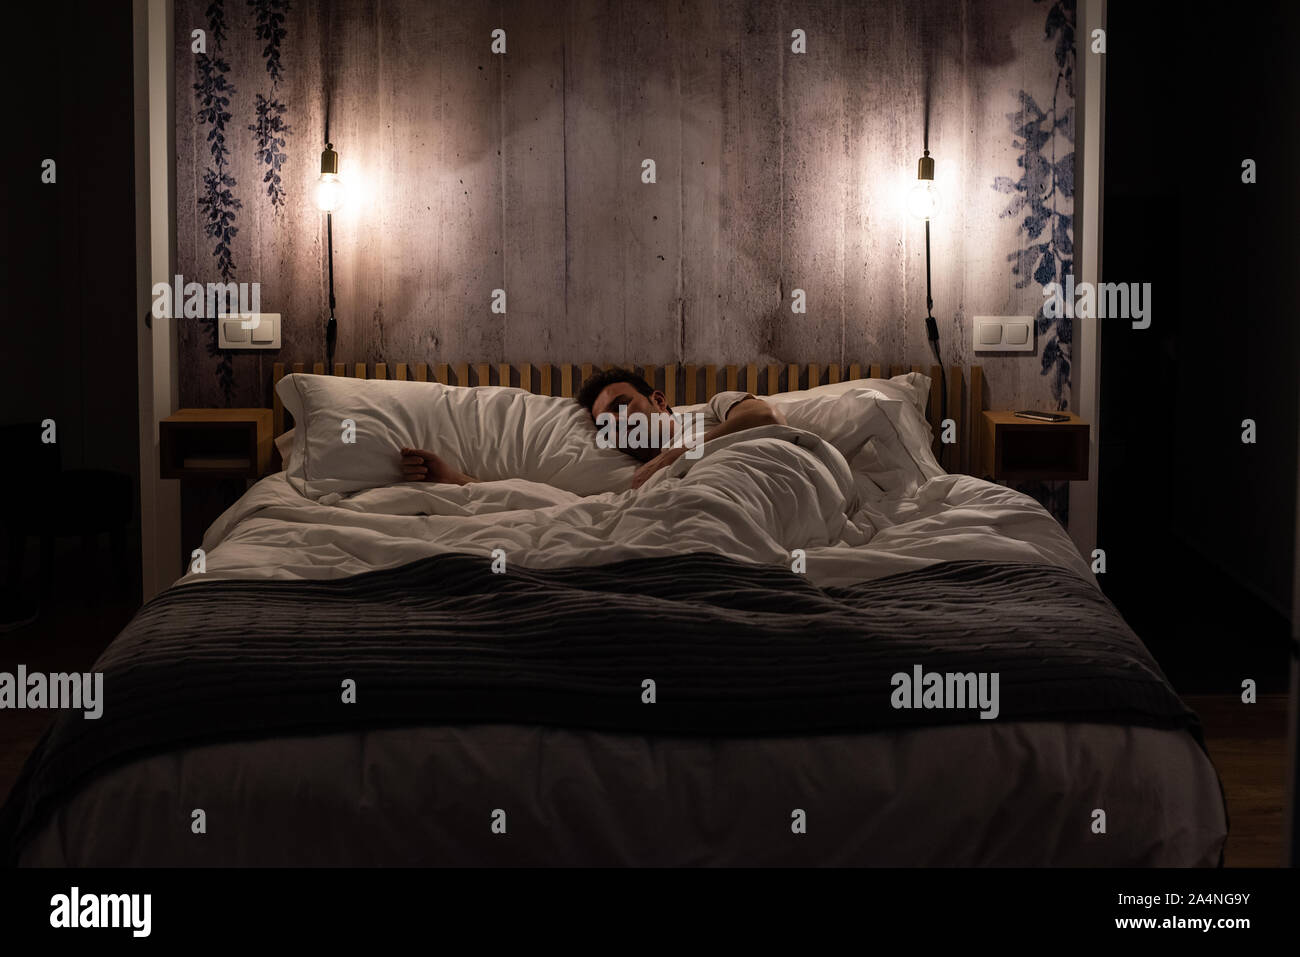 Mann Schlafen Im Bett In Ein Modernes Schones Schlafzimmer Stockfotografie Alamy